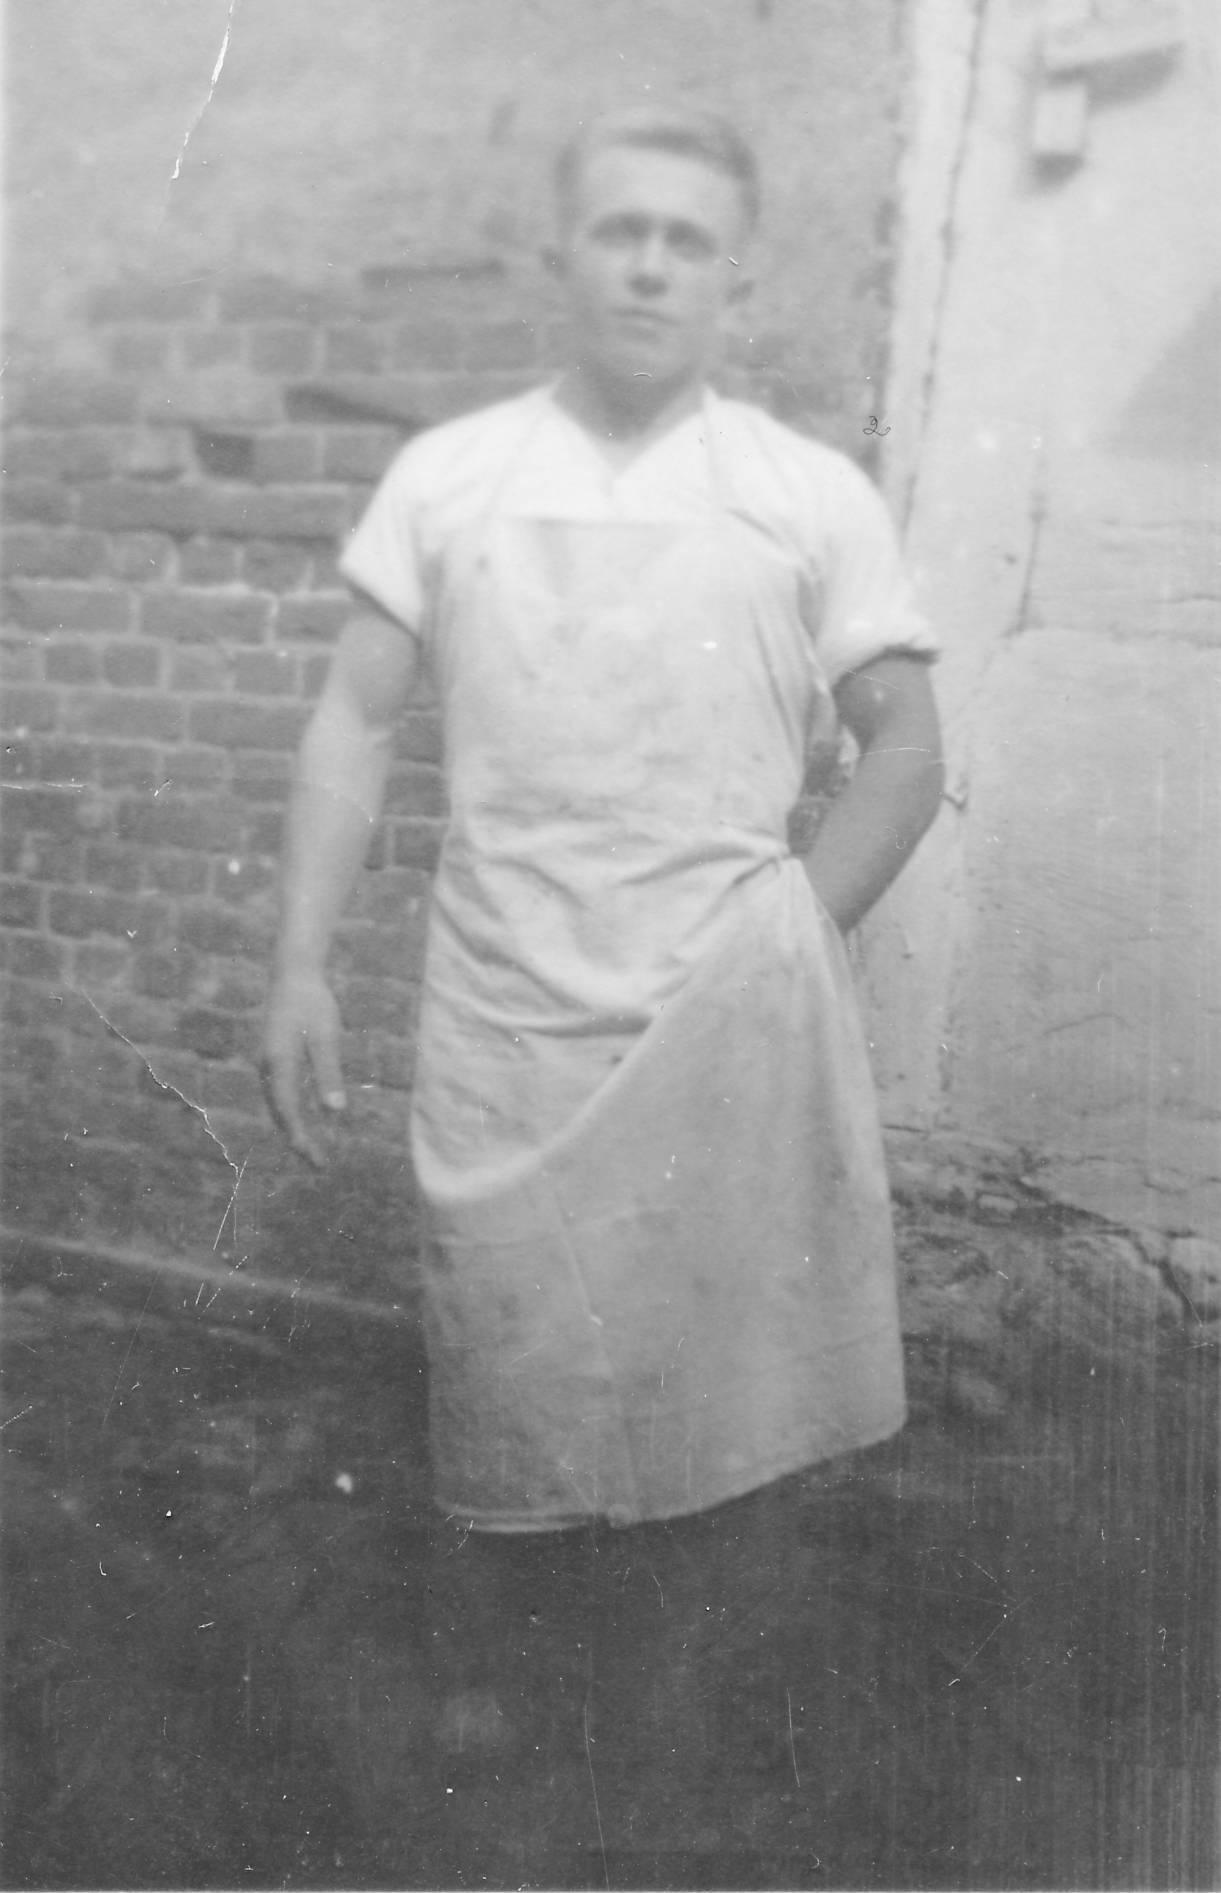 Hans Seemann arbeitete vorher beim Bäcker Hintze in Malchin (1928)